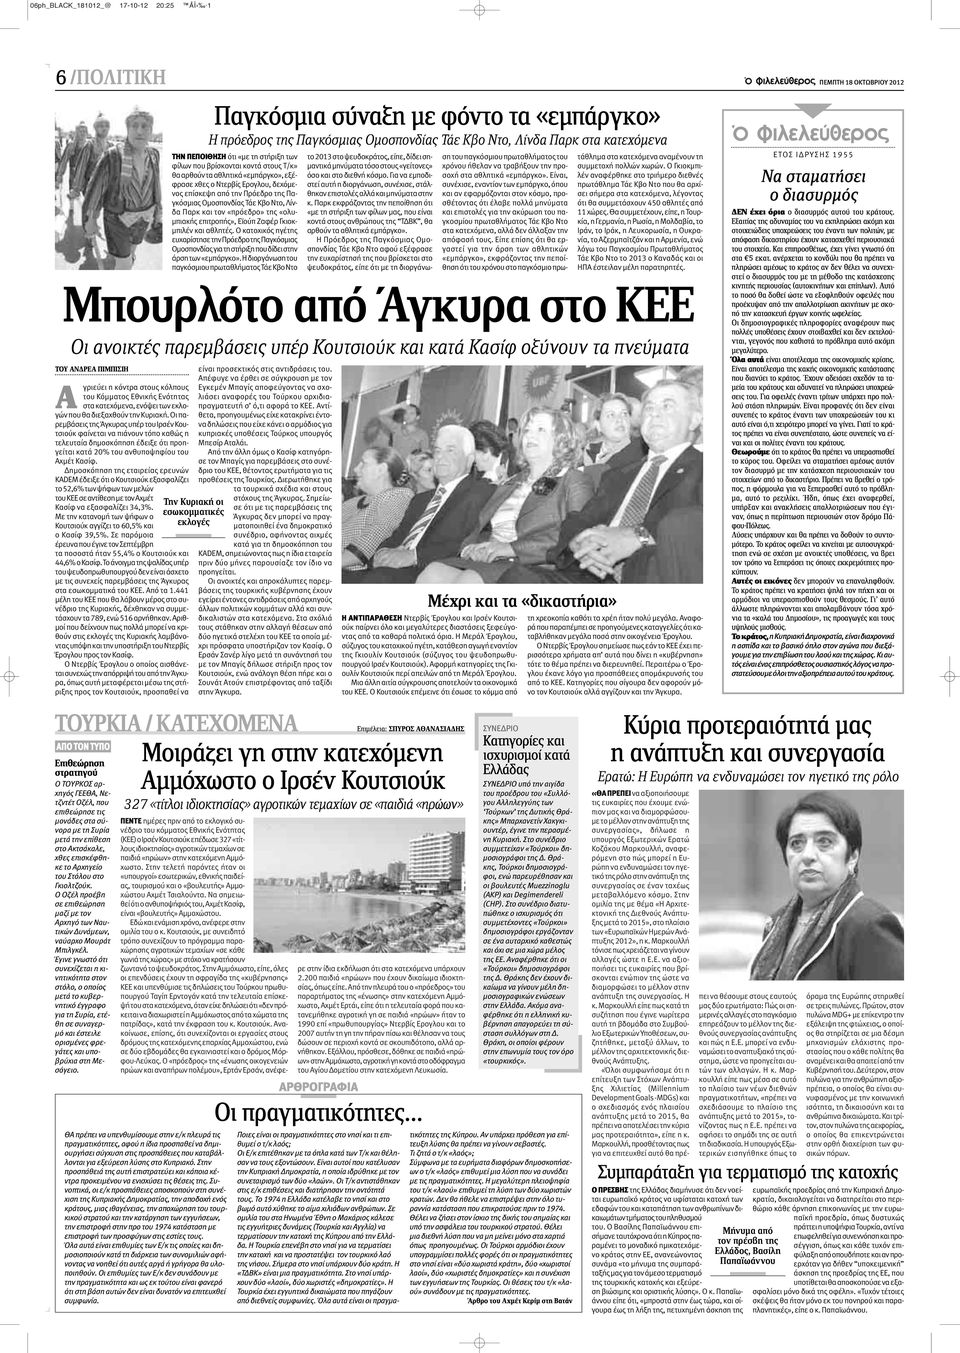 Δημοσκόπηση της εταιρείας ερευνών KADEM έδειξε ότι ο Κουτσιούκ εξασφαλίζει το 52,6% των ψήφων των μελών του ΚΕΕ σε αντίθεση με τον Αχμέτ Κασίφ να εξασφαλίζει 34,3%.